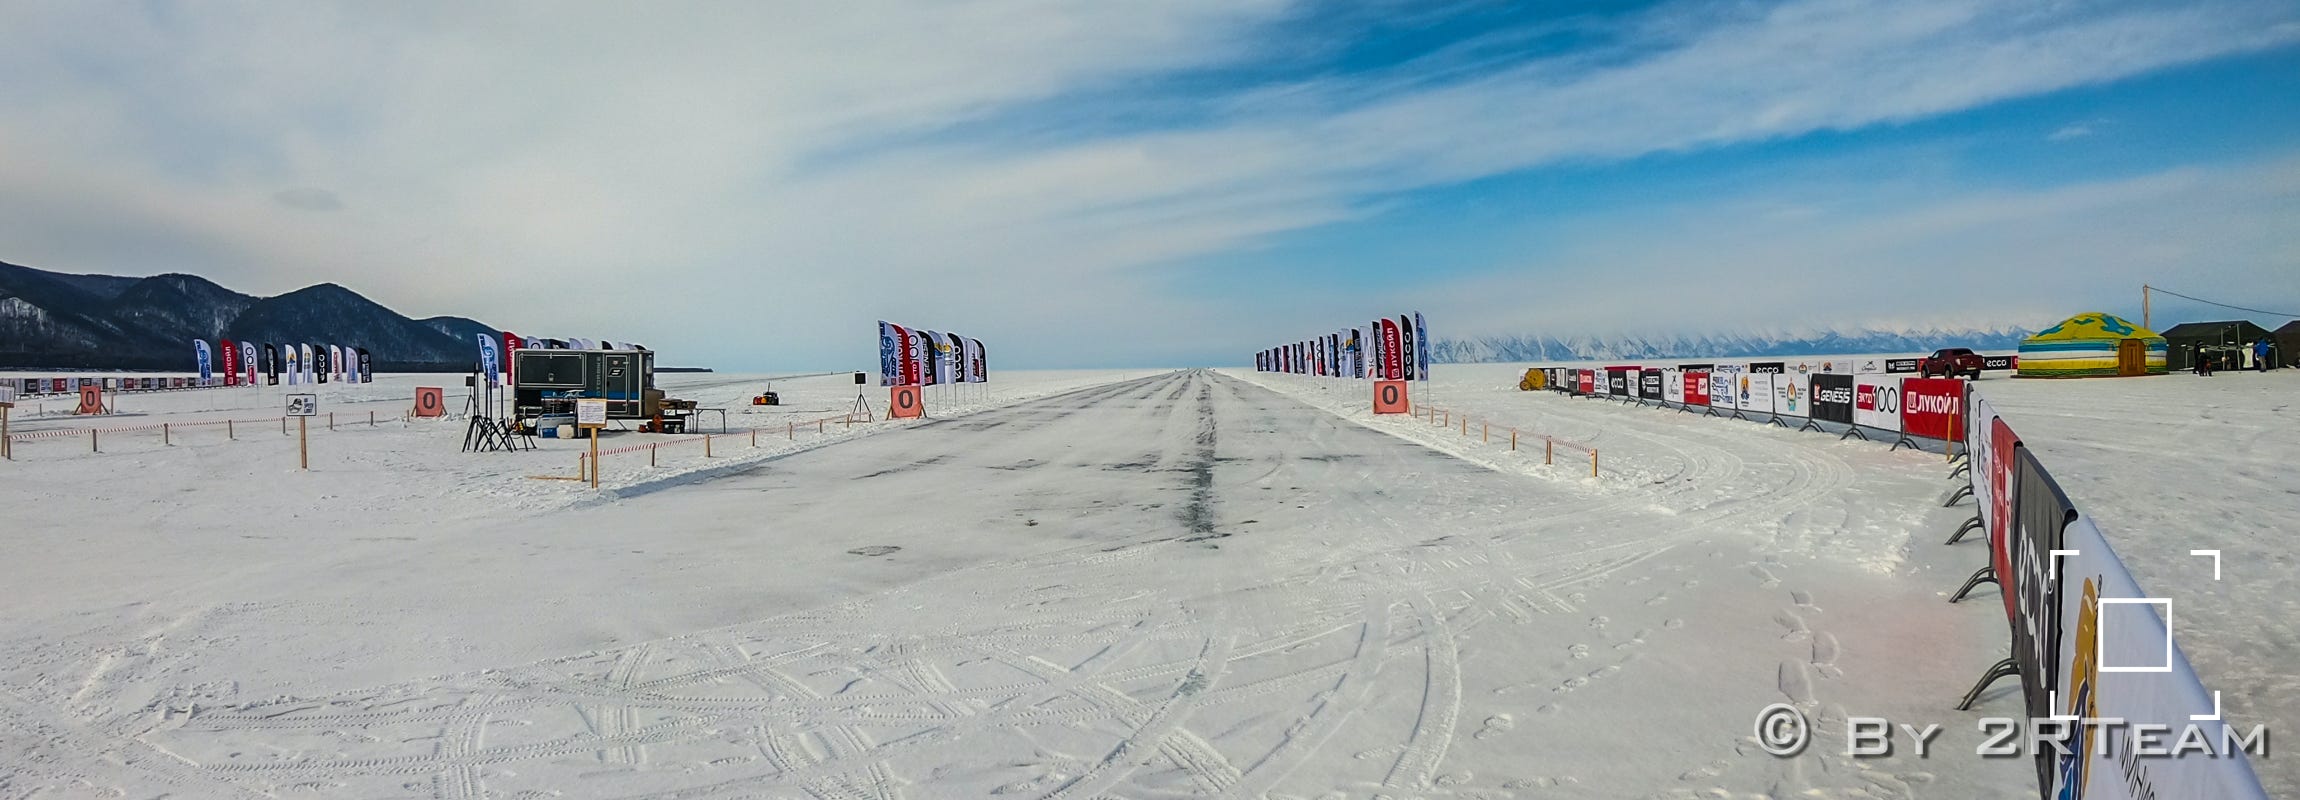 Baïkal Mile 2022, le 2RTeam vous fait profiter de son expérience de cette course de vitesse en Russie équivalente à Bonneville, mais sur glace